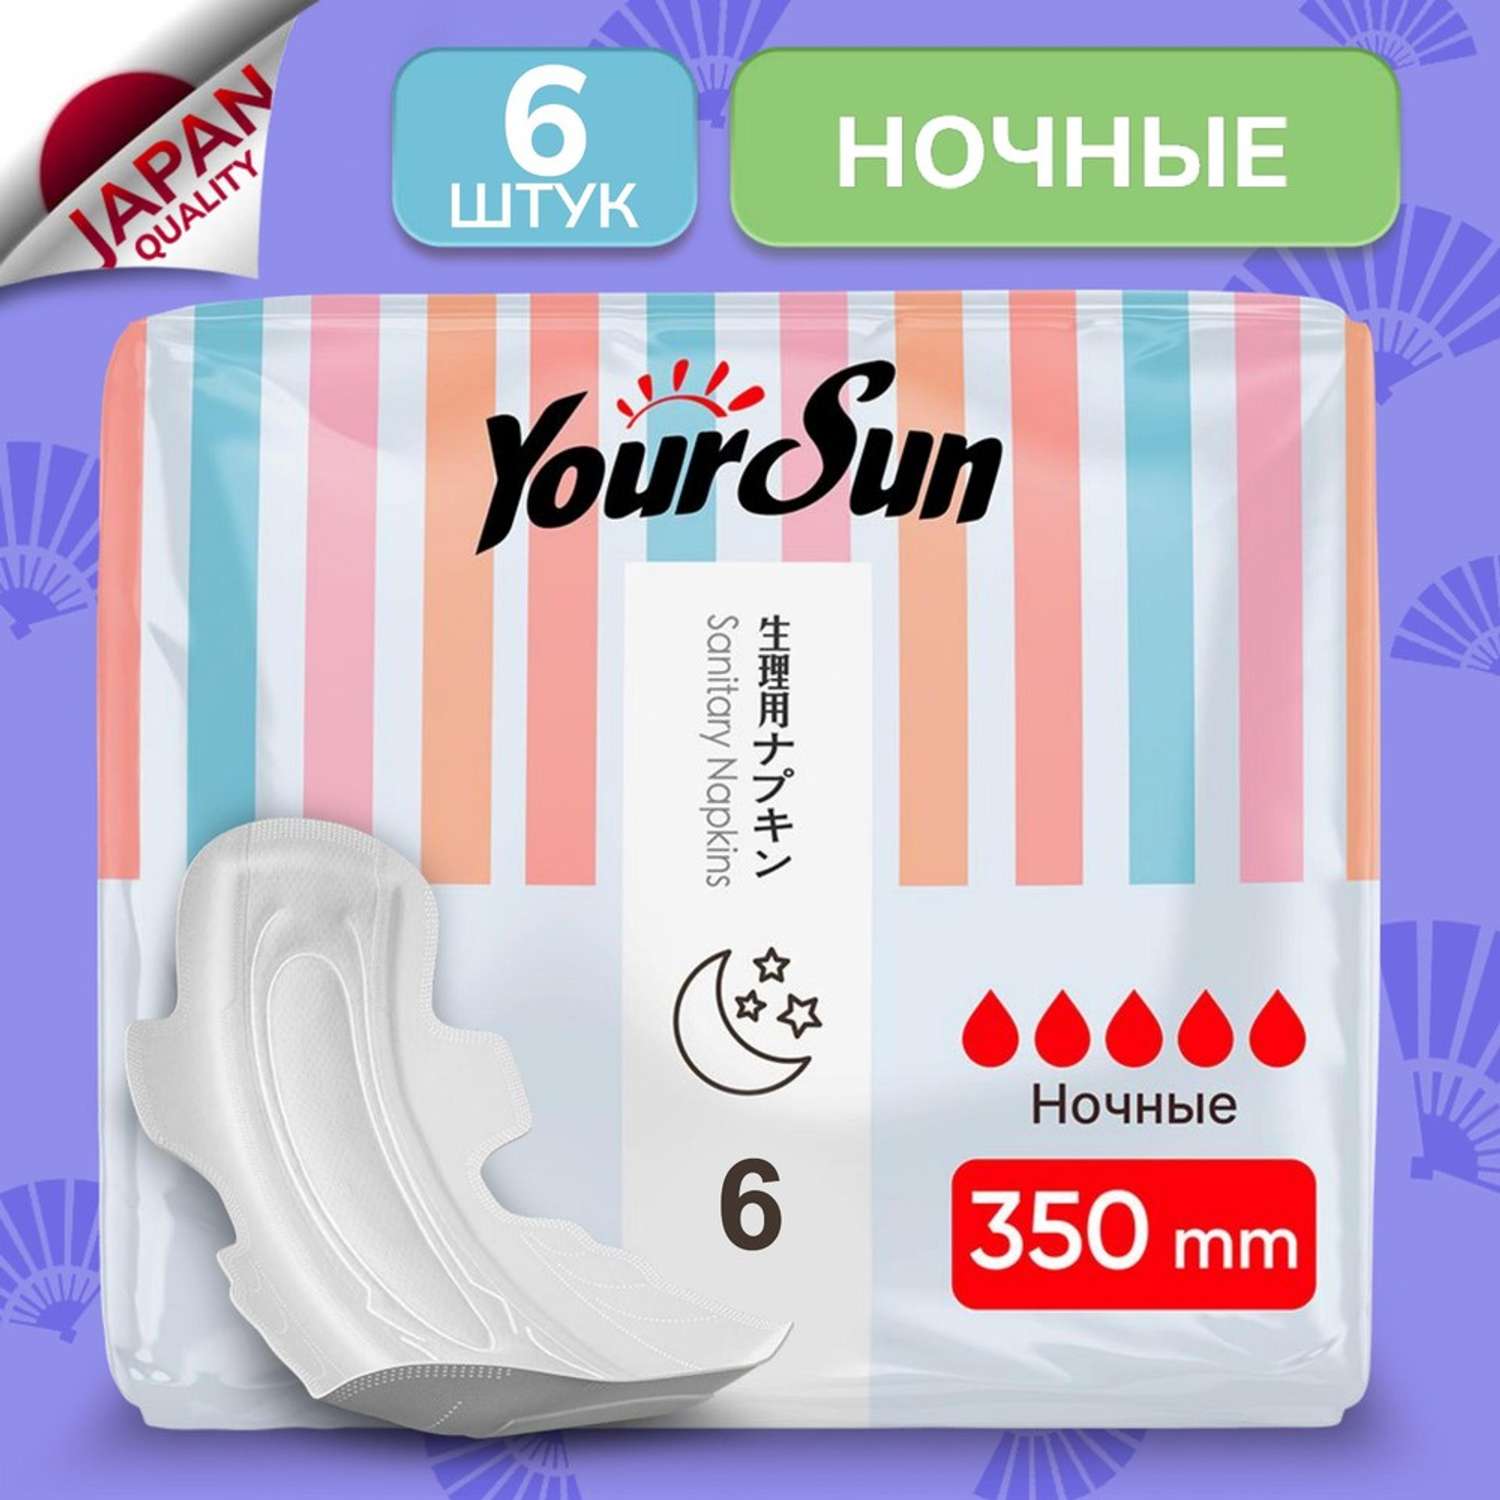 Гигиенические прокладки YourSun ночные с крылышками 35 см 6 шт - фото 1